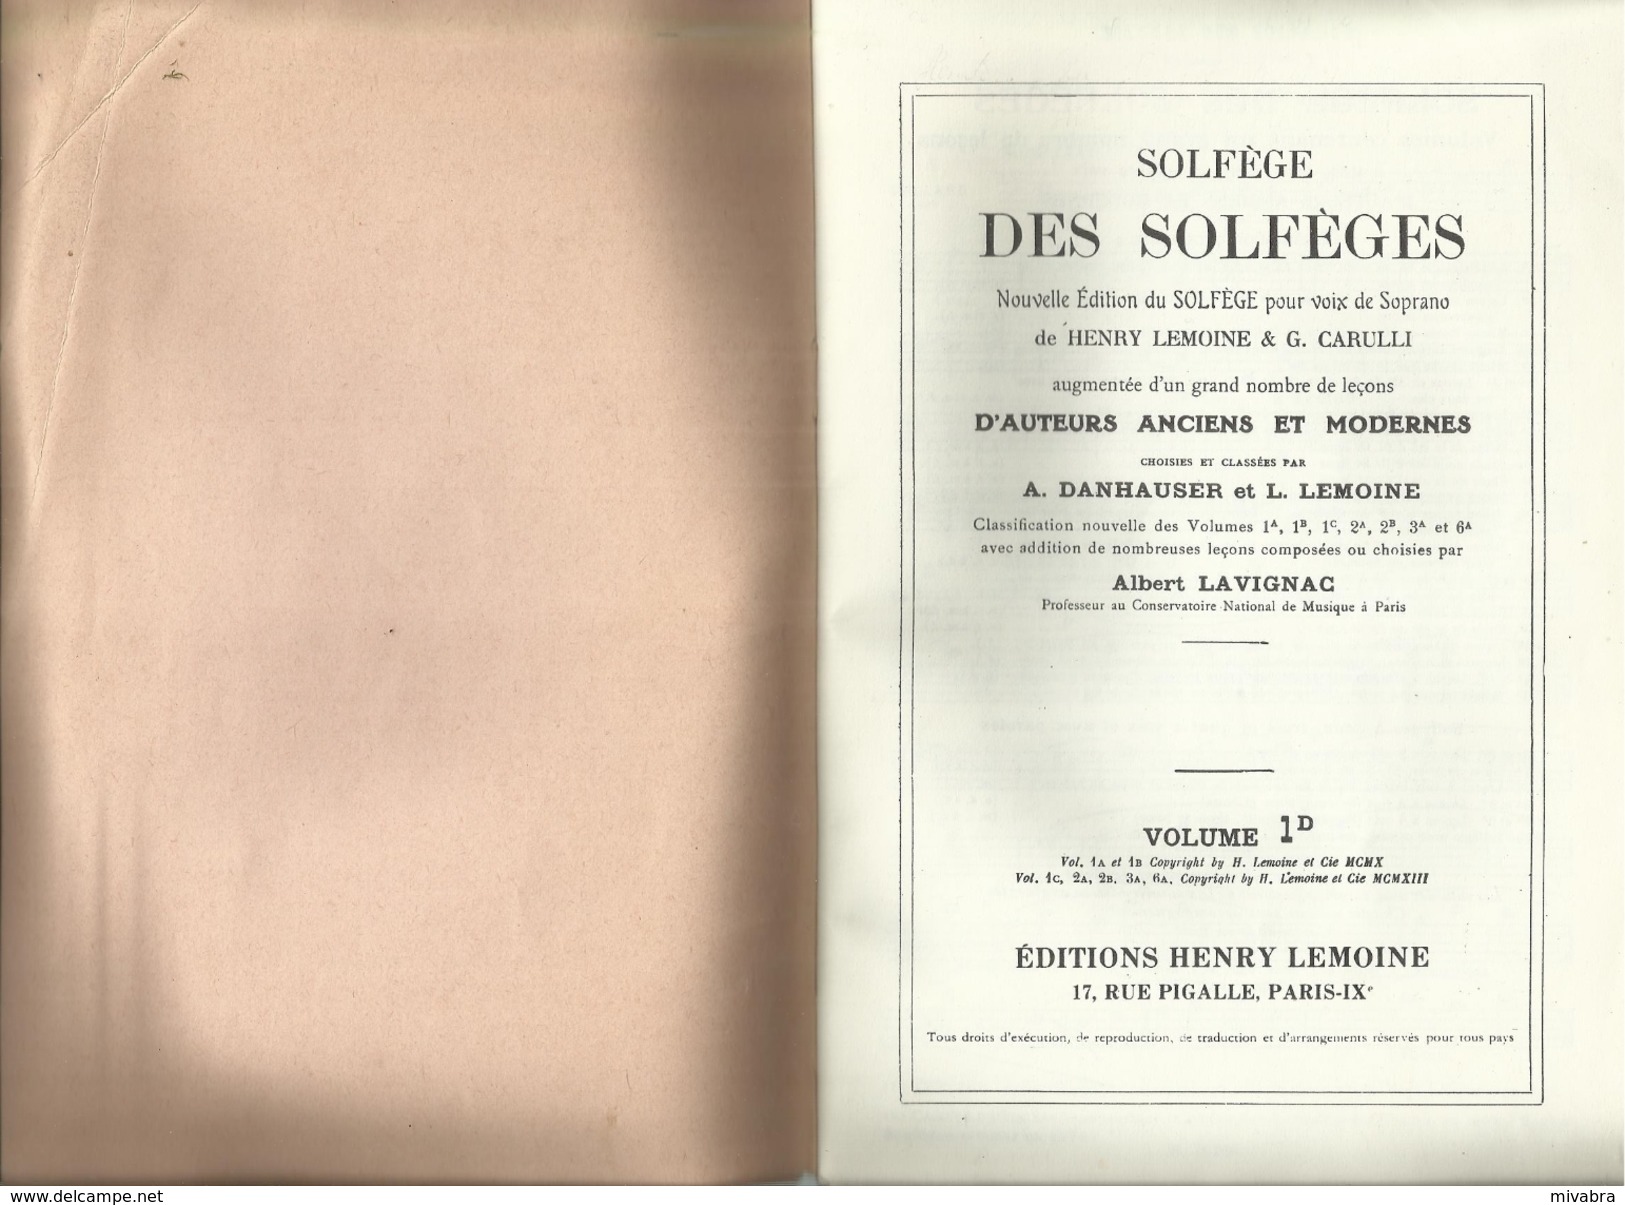 Solfege Des Solfeges: Nouvelle Edition Du Solfege Pour Voix De Soprano Grand Nombre De Leçons Volume 1D - Volksmusik